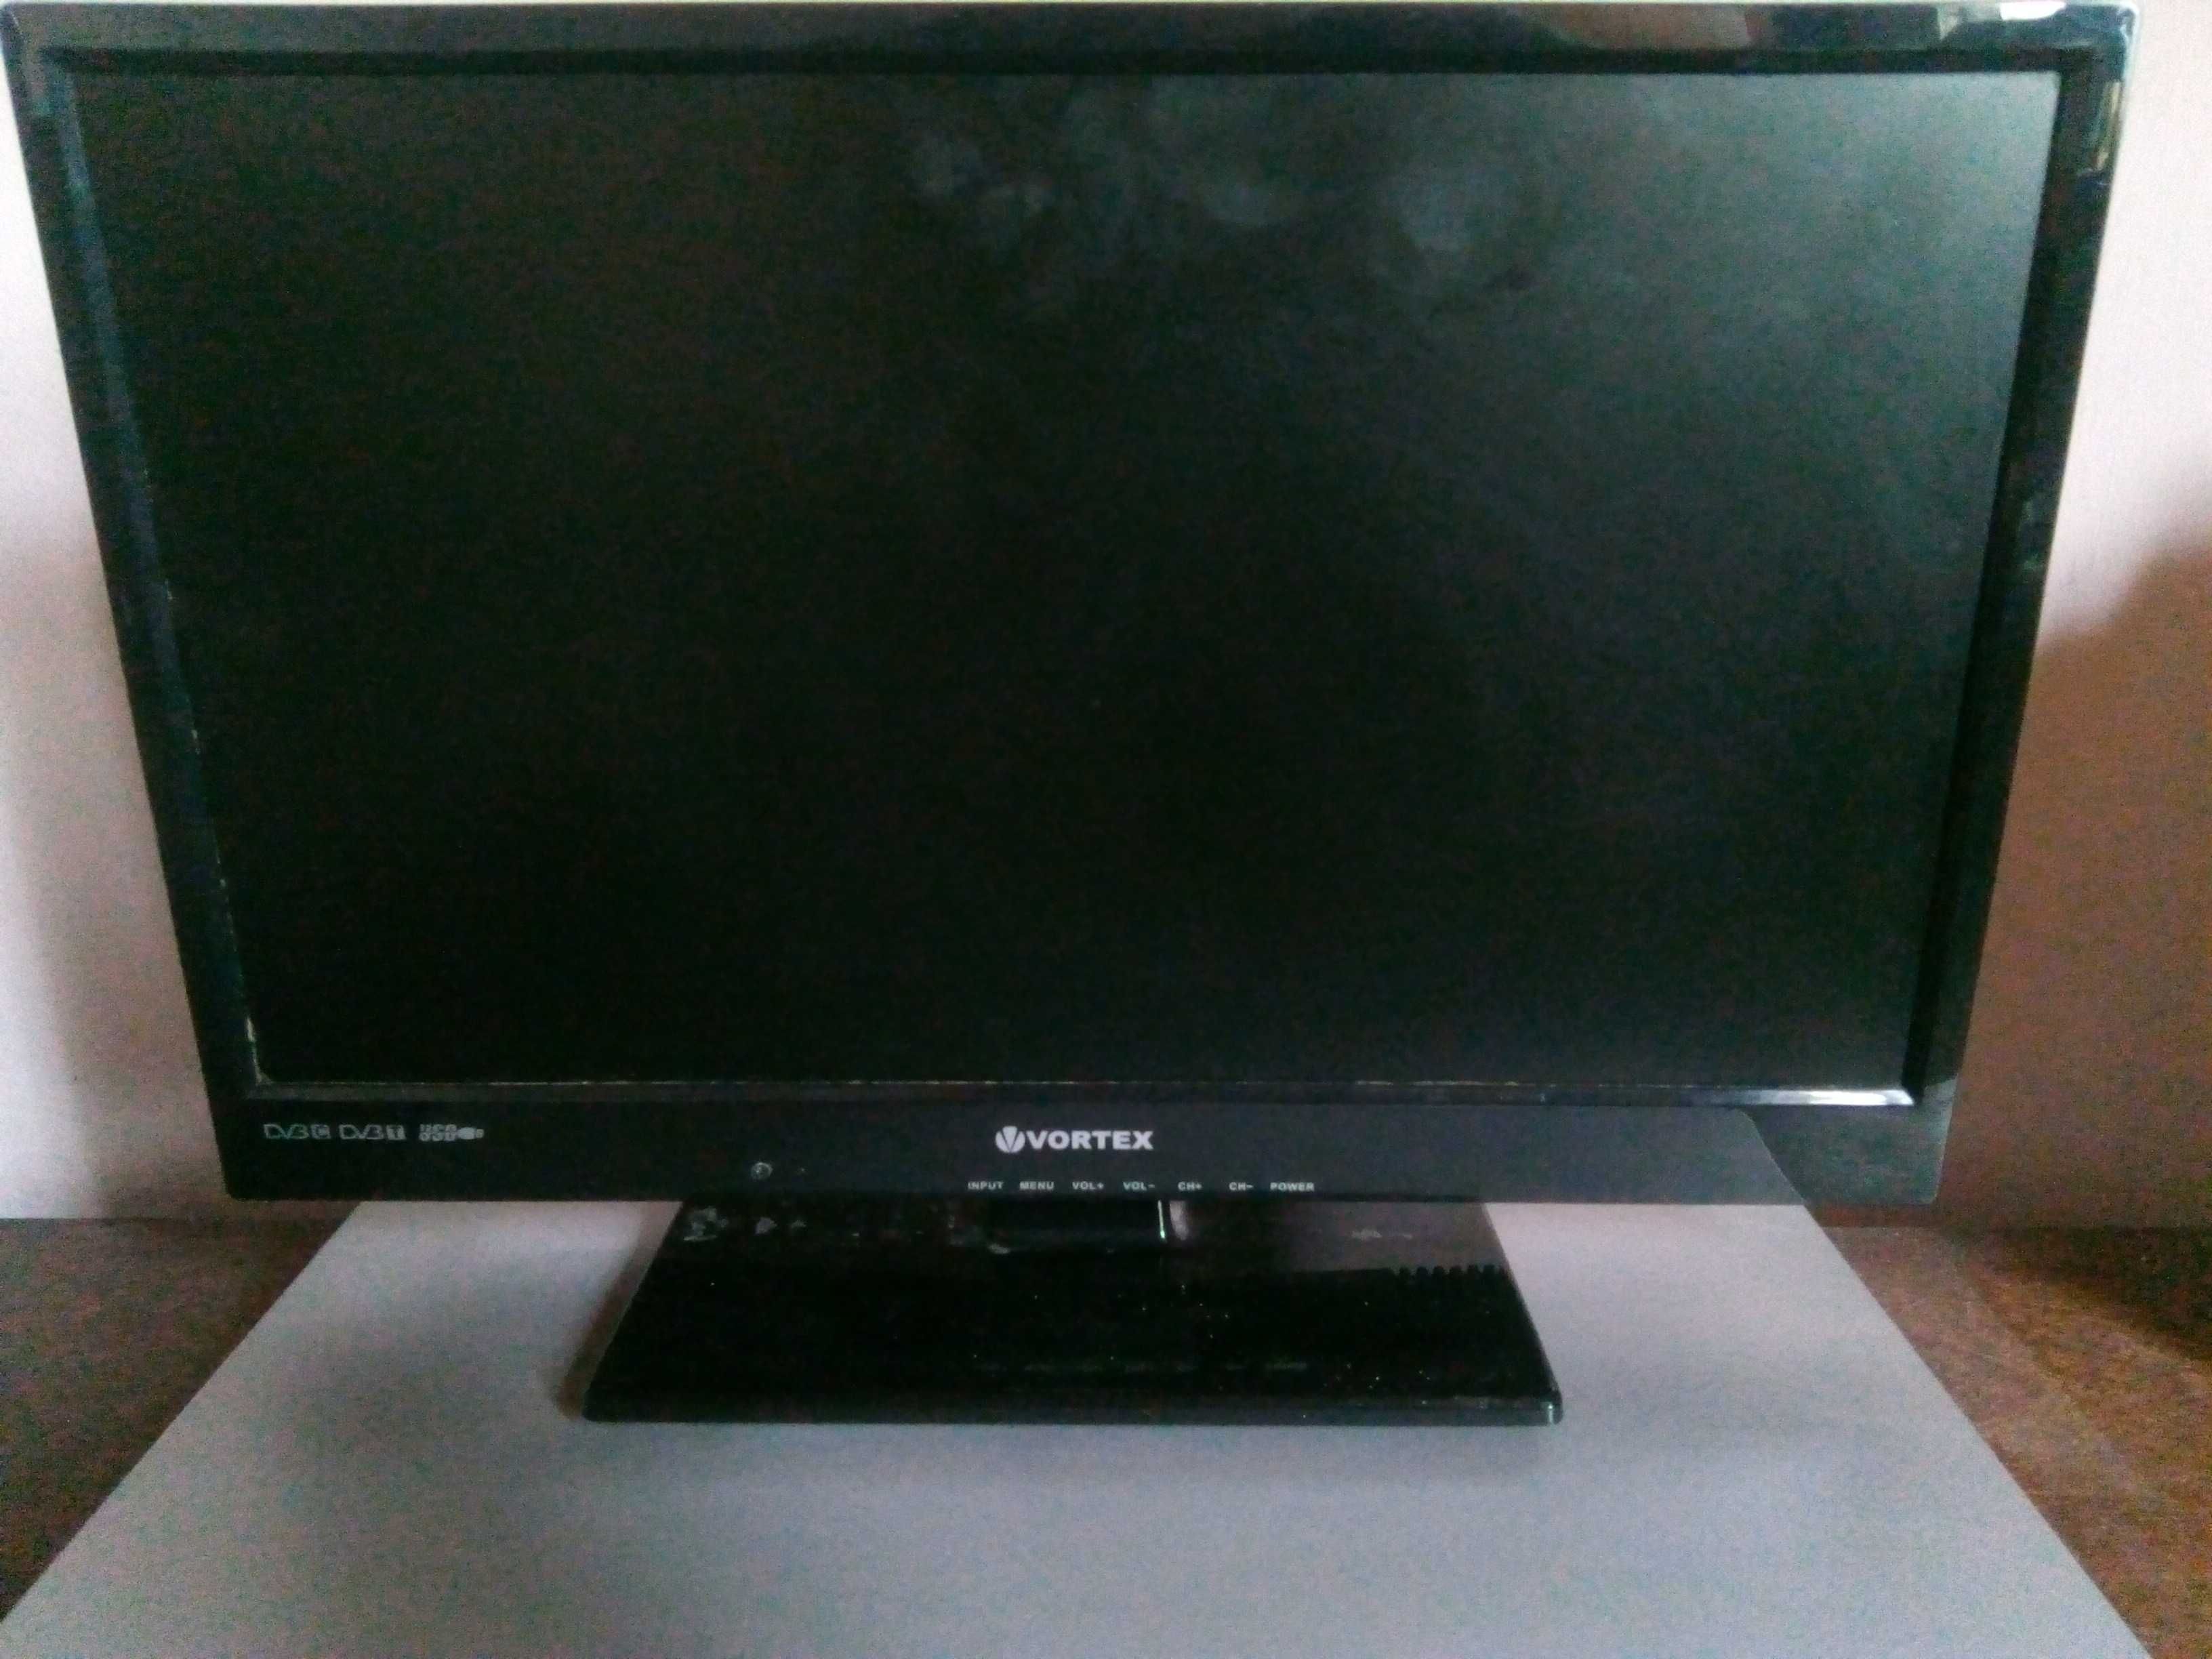 TV LED Vortex, diagonală 48 cm, pentru piese sau reparat.